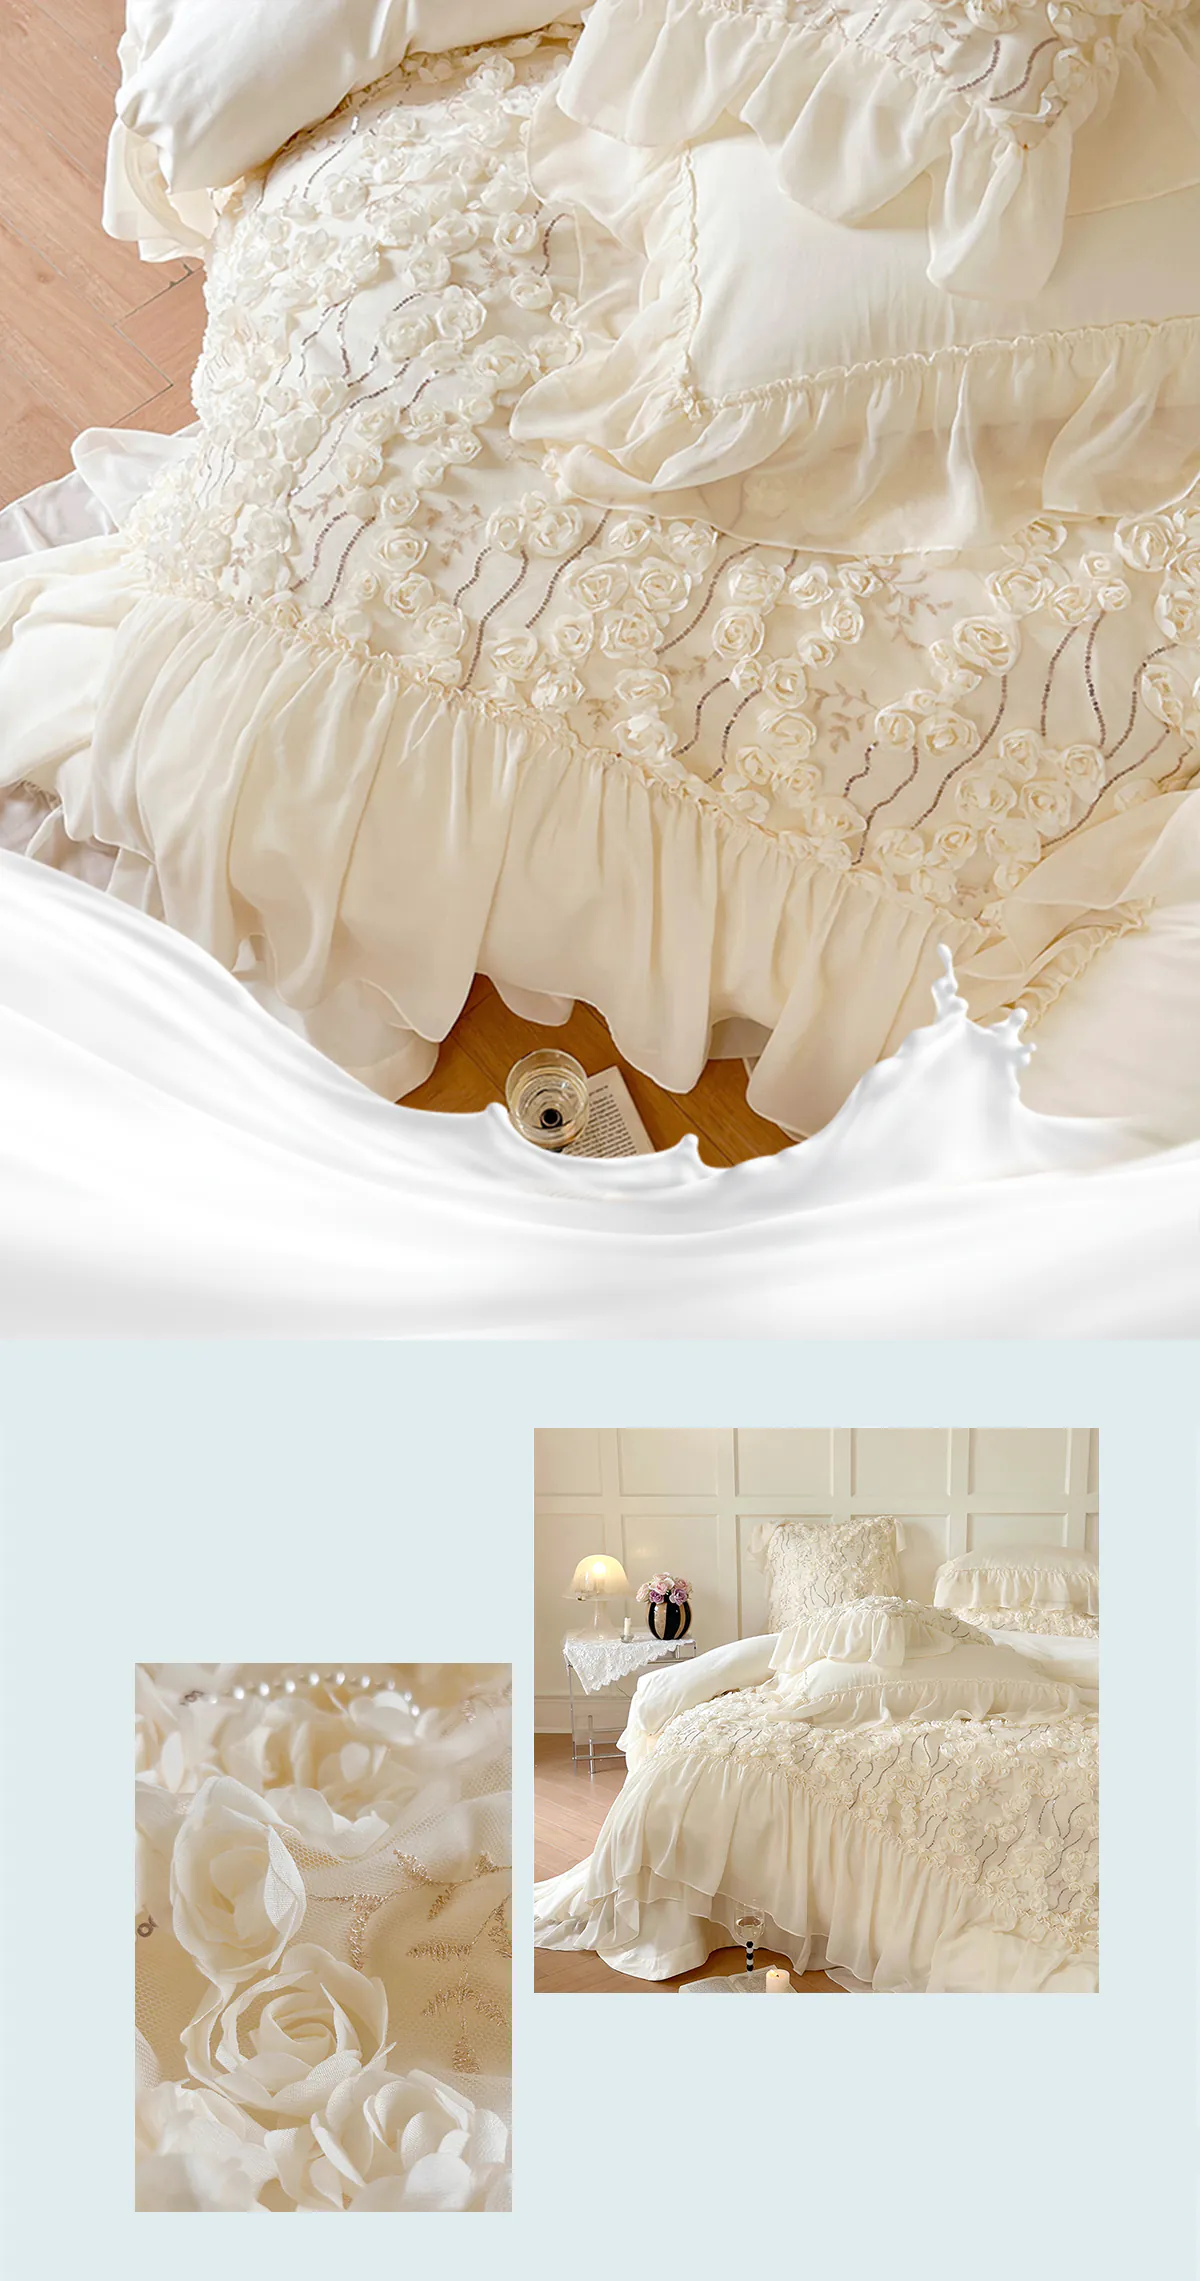 Aesthetic-140S-Long-Staple-Cotton-Chiffon-Lace-Floral-Bedding-Set12